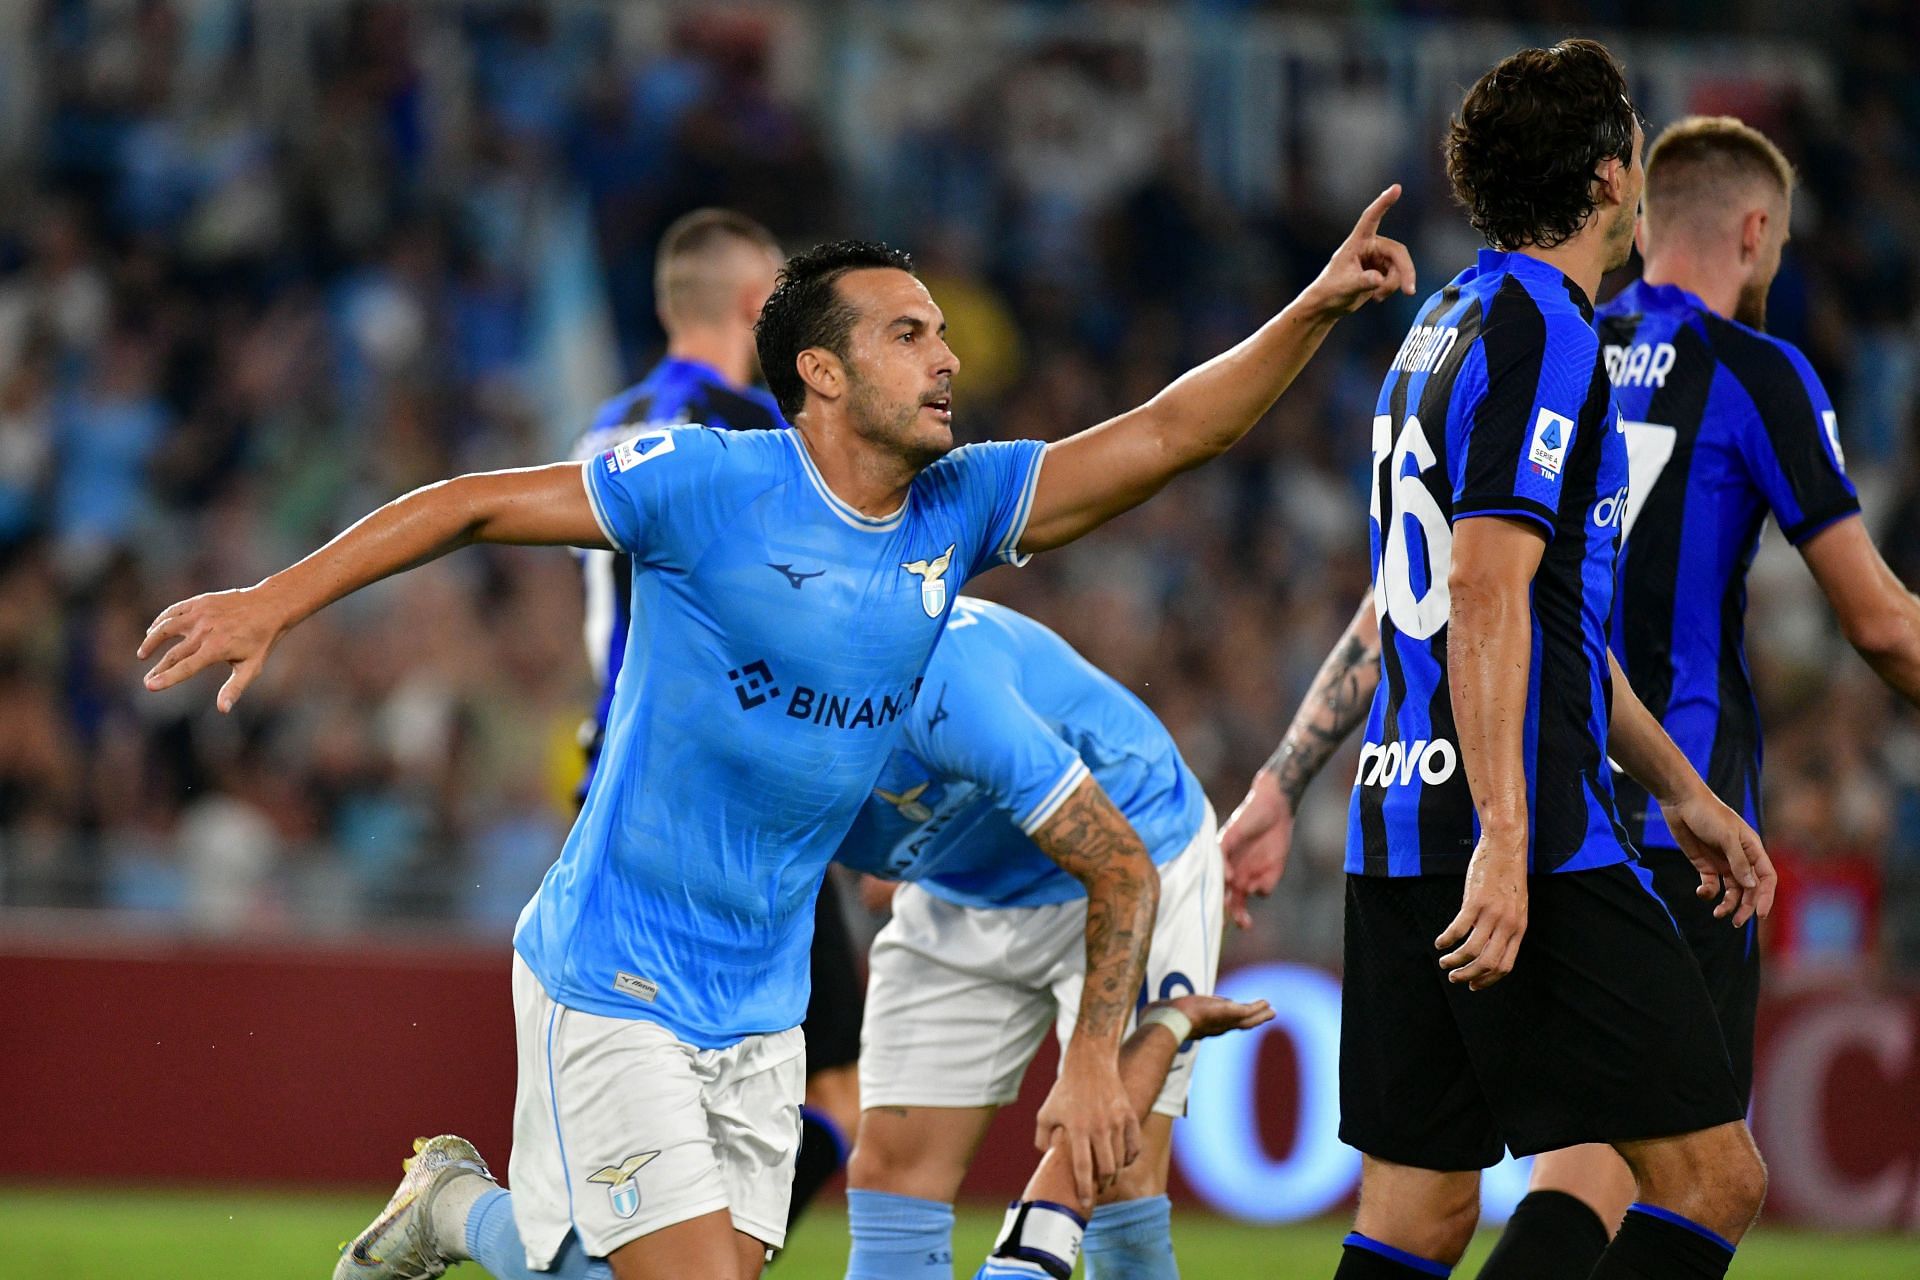 Pedro has been for impressive for Lazio